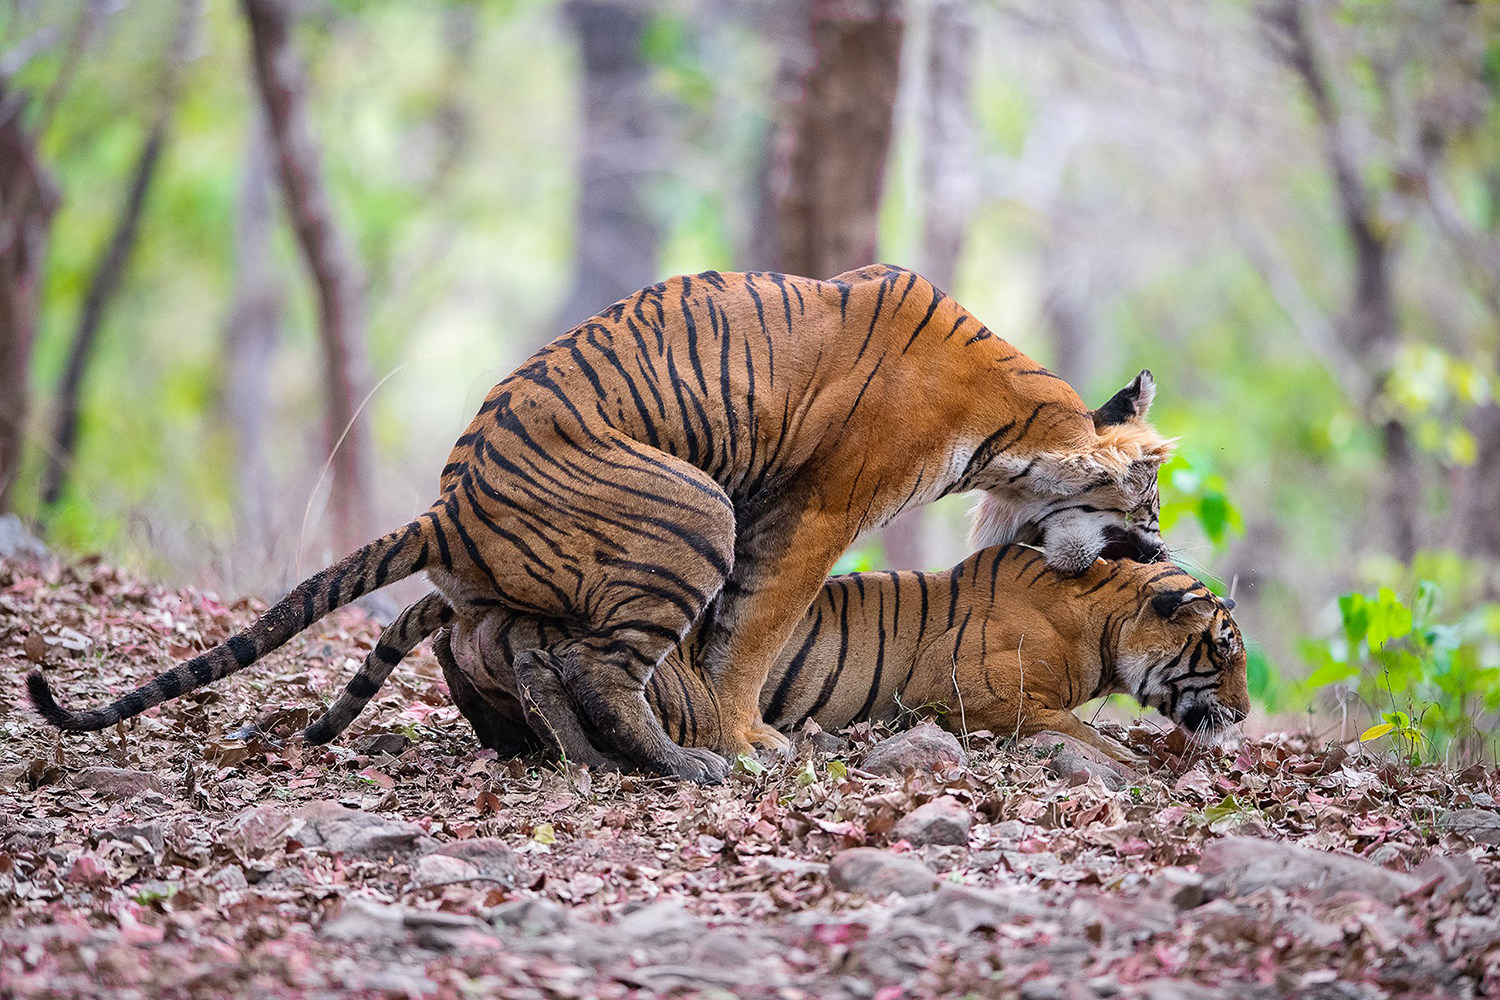 Tiger Courtship